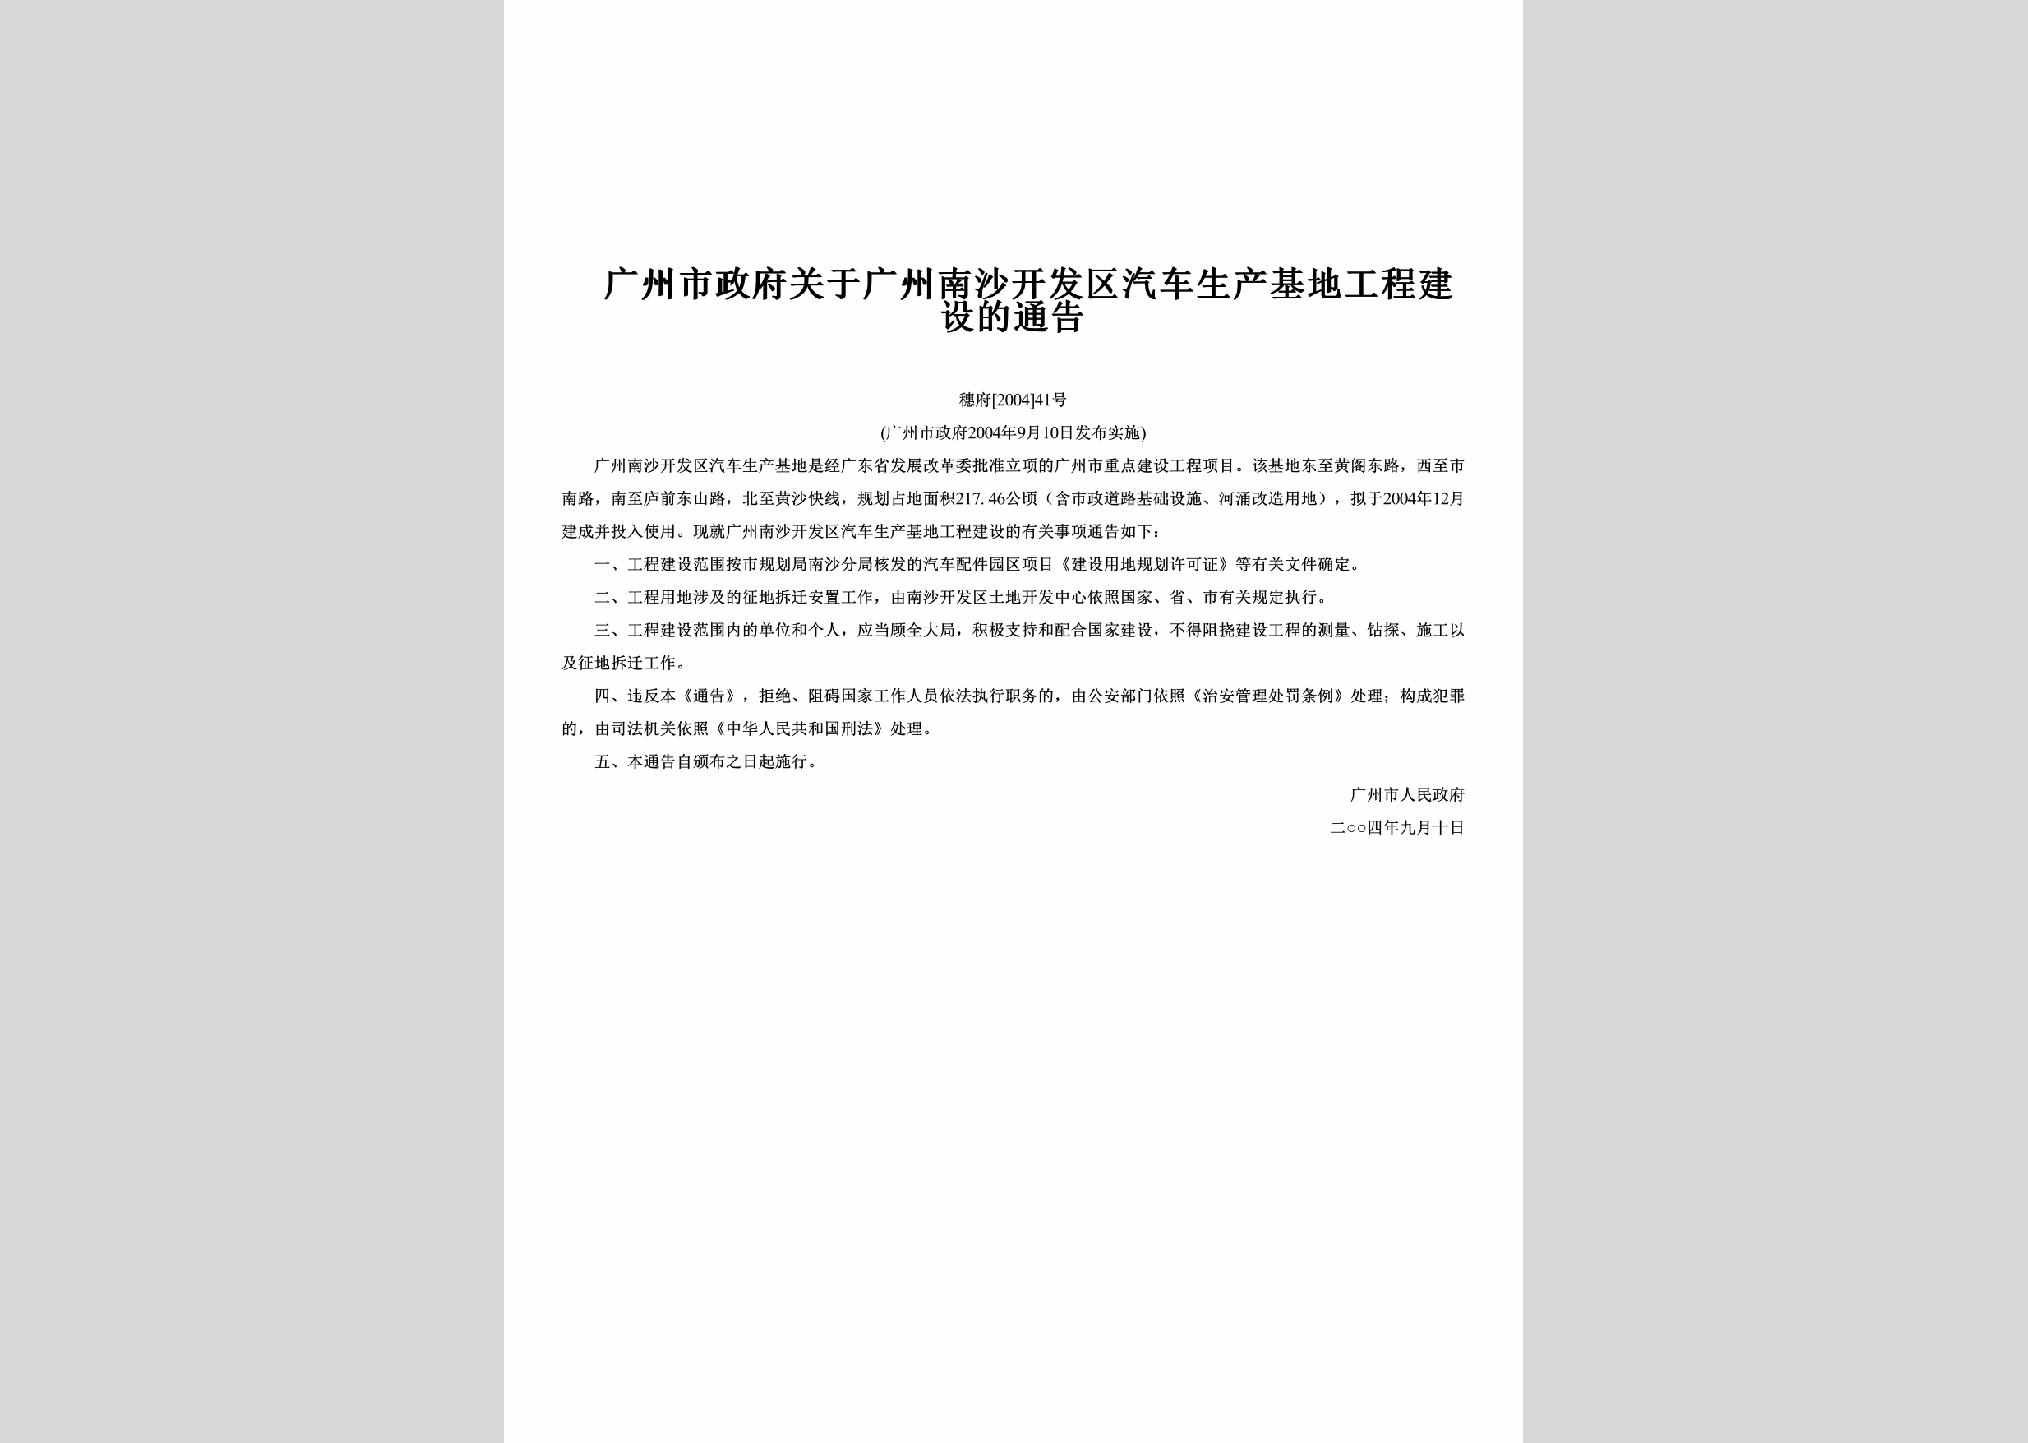 穗府[2004]41号：关于广州南沙开发区汽车生产基地工程建设的通告